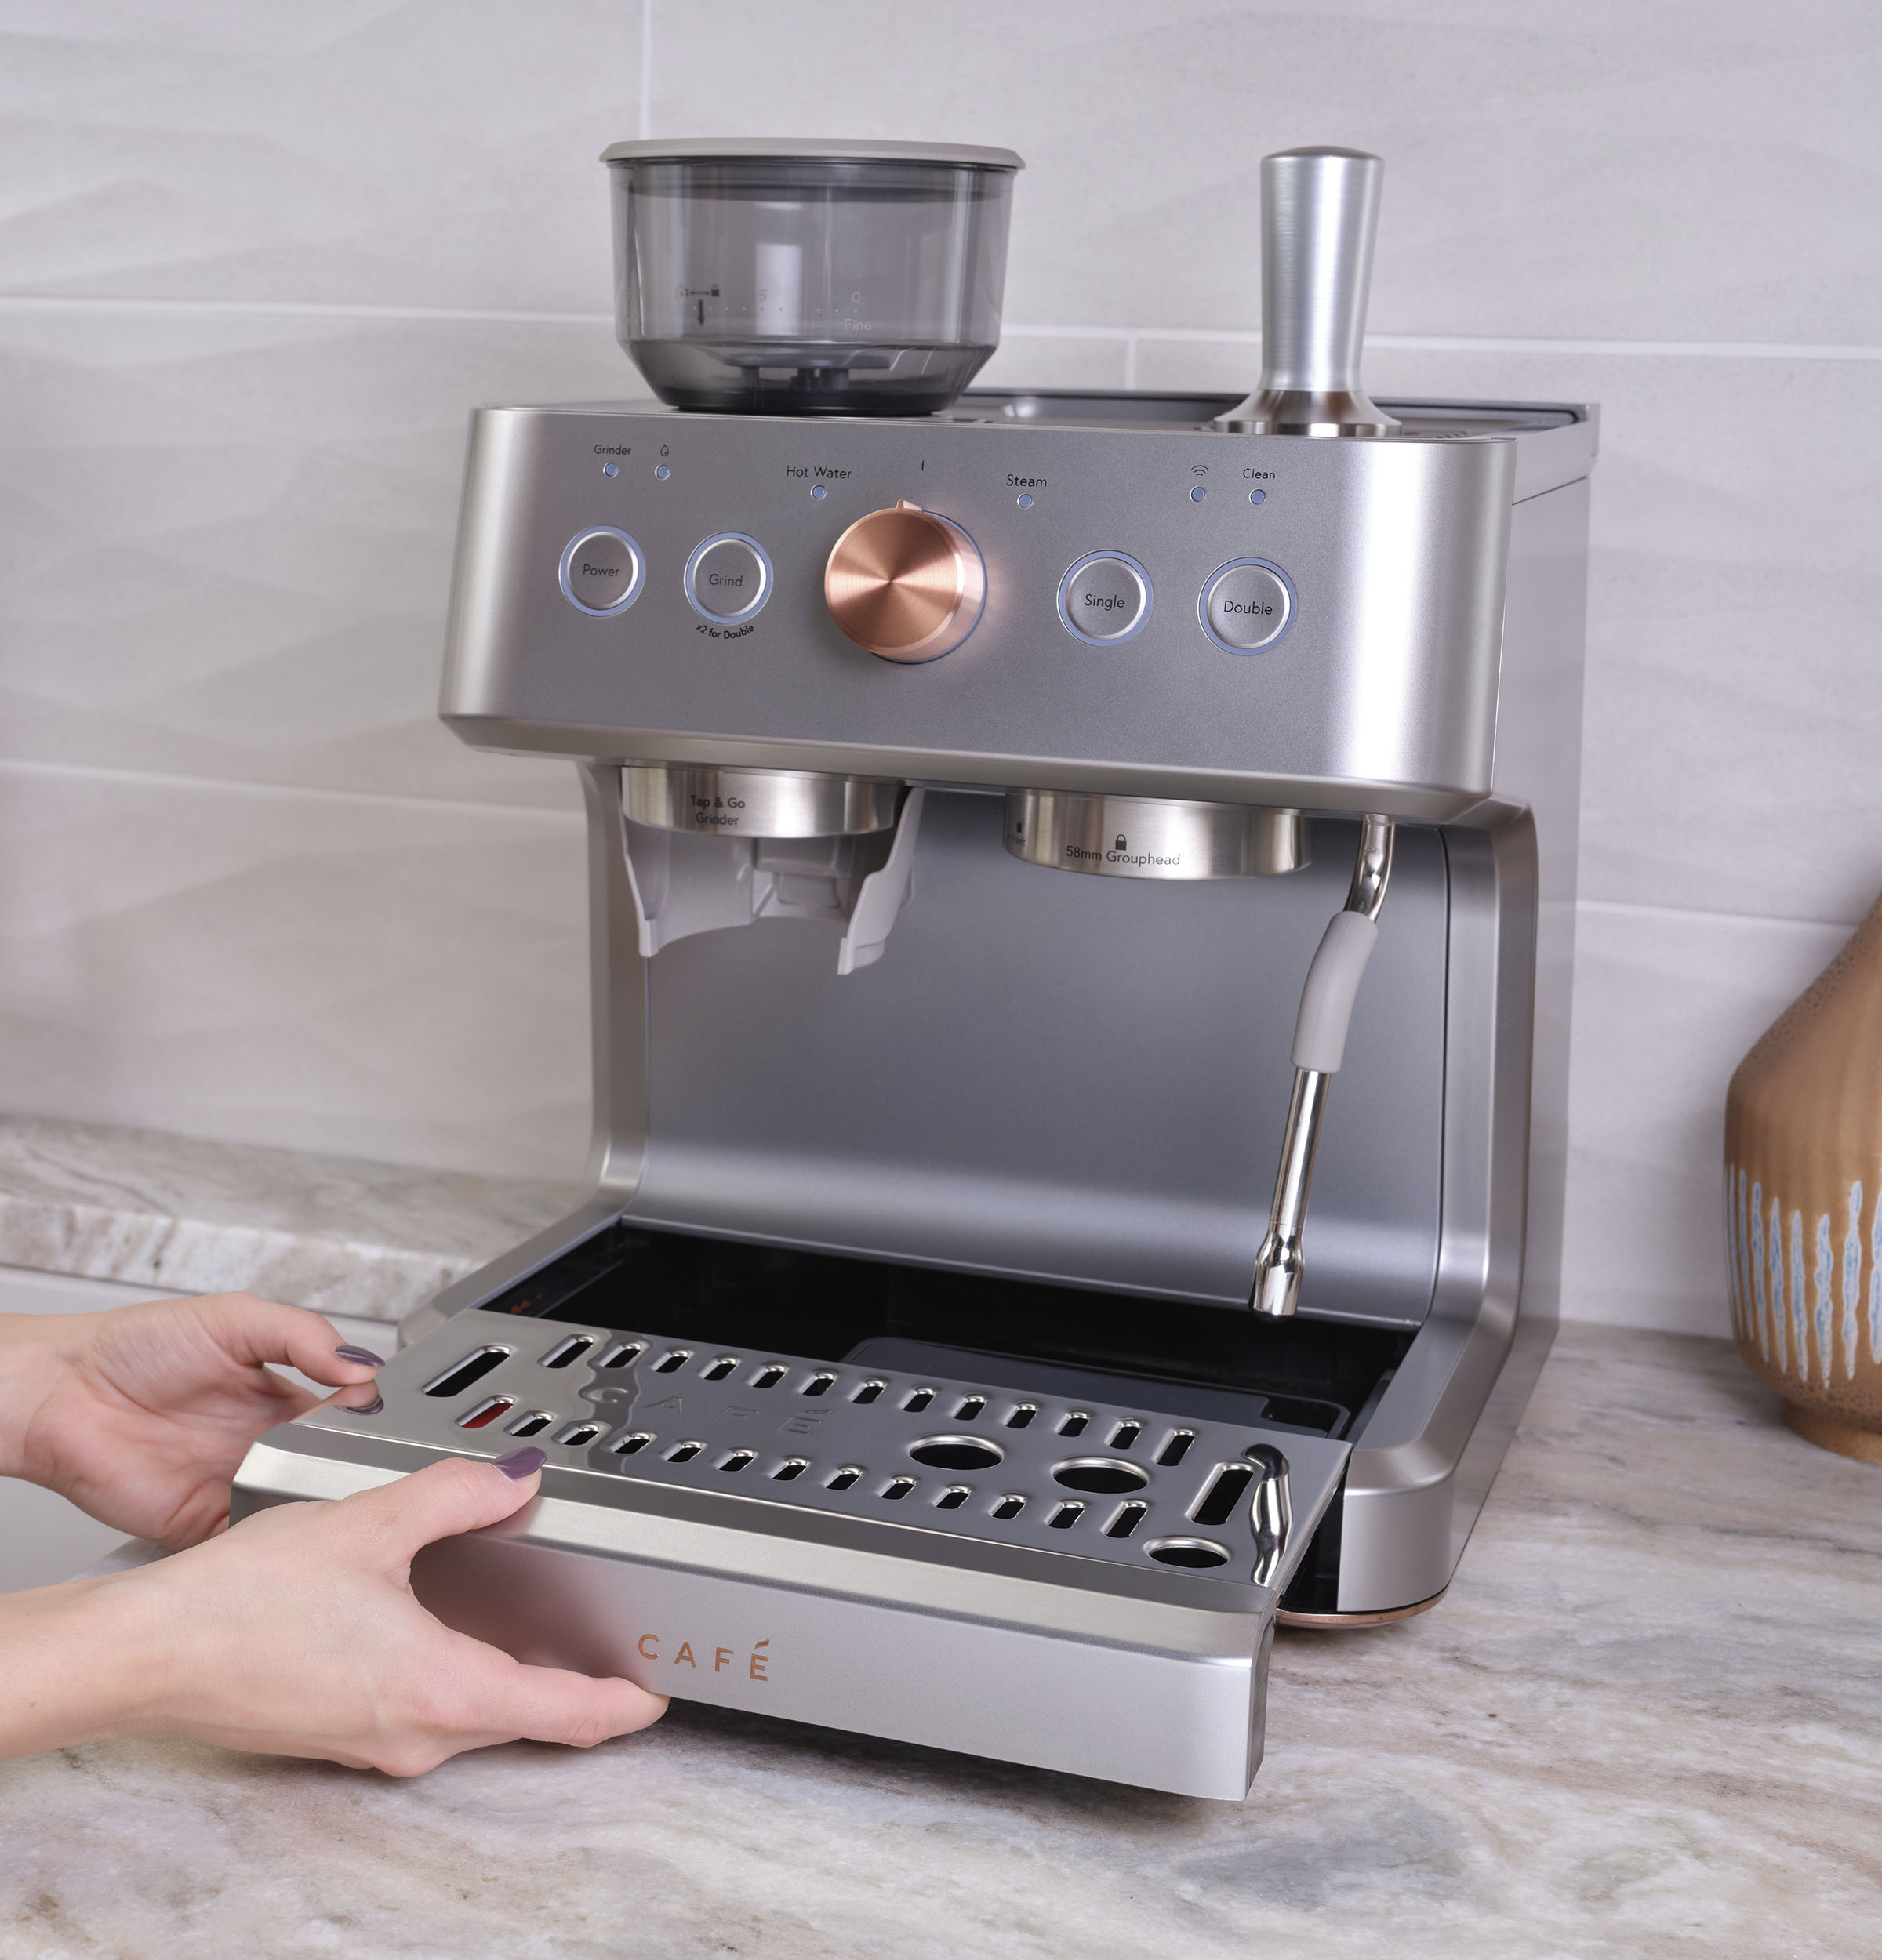 Cafe Bellissimo Semi-Automatic Espresso Machine & Frother - Matte White